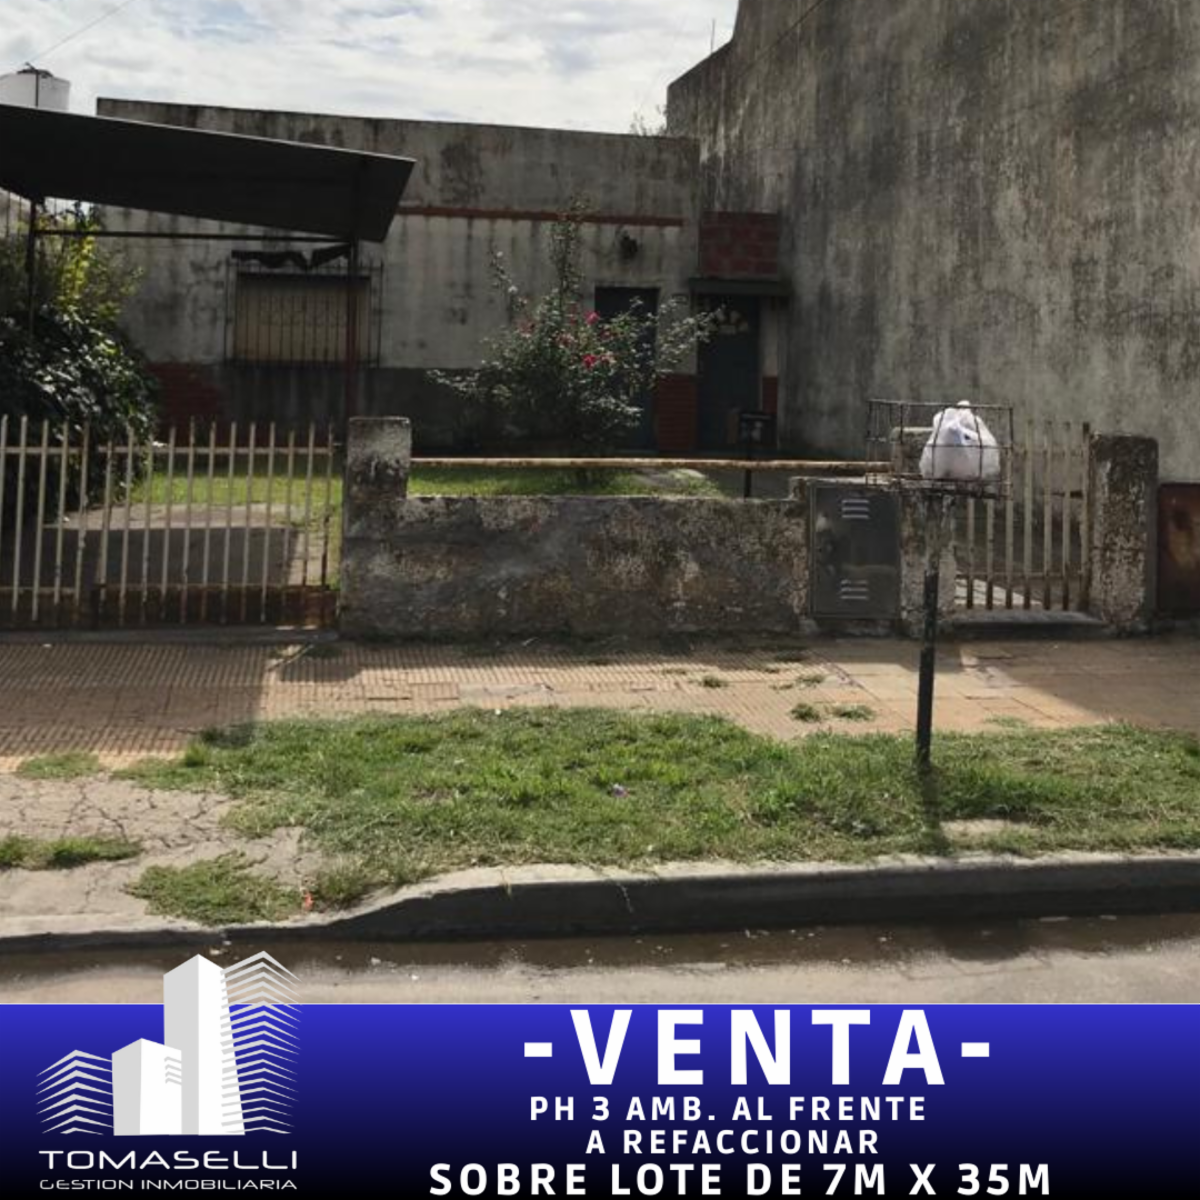 VENTA - VILLA MADERO - CAS 3 AMBIENTES AL FRENTE A REFACCIONAR - SOBRE LOTE DE 7.06m x 34.93m